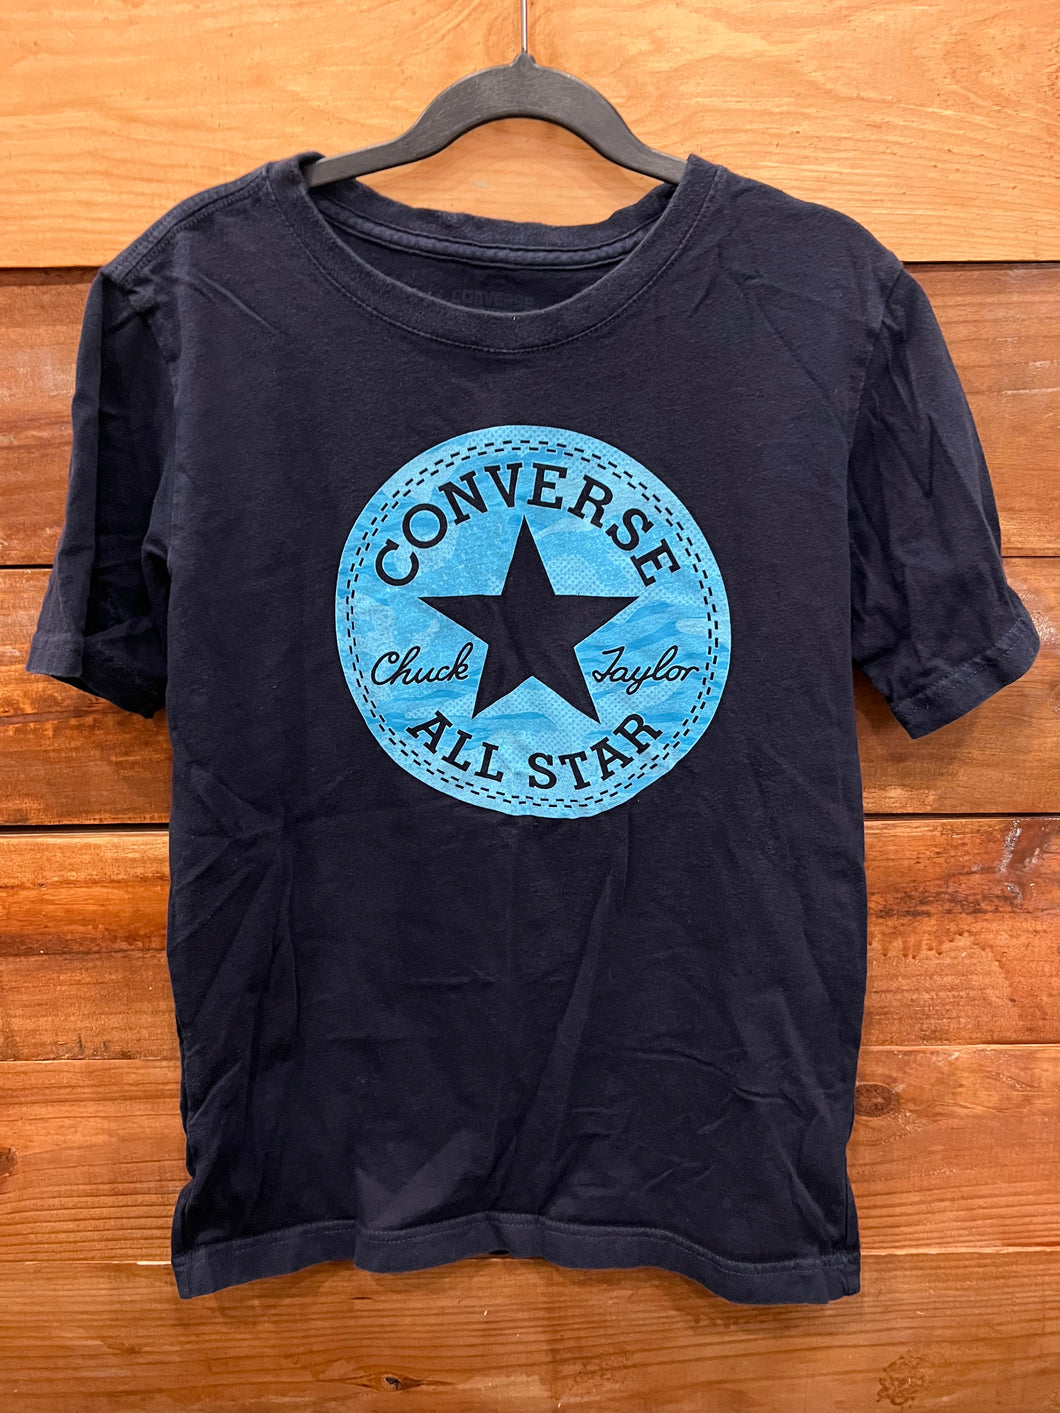 Converse Blue Shirt Size 12-14